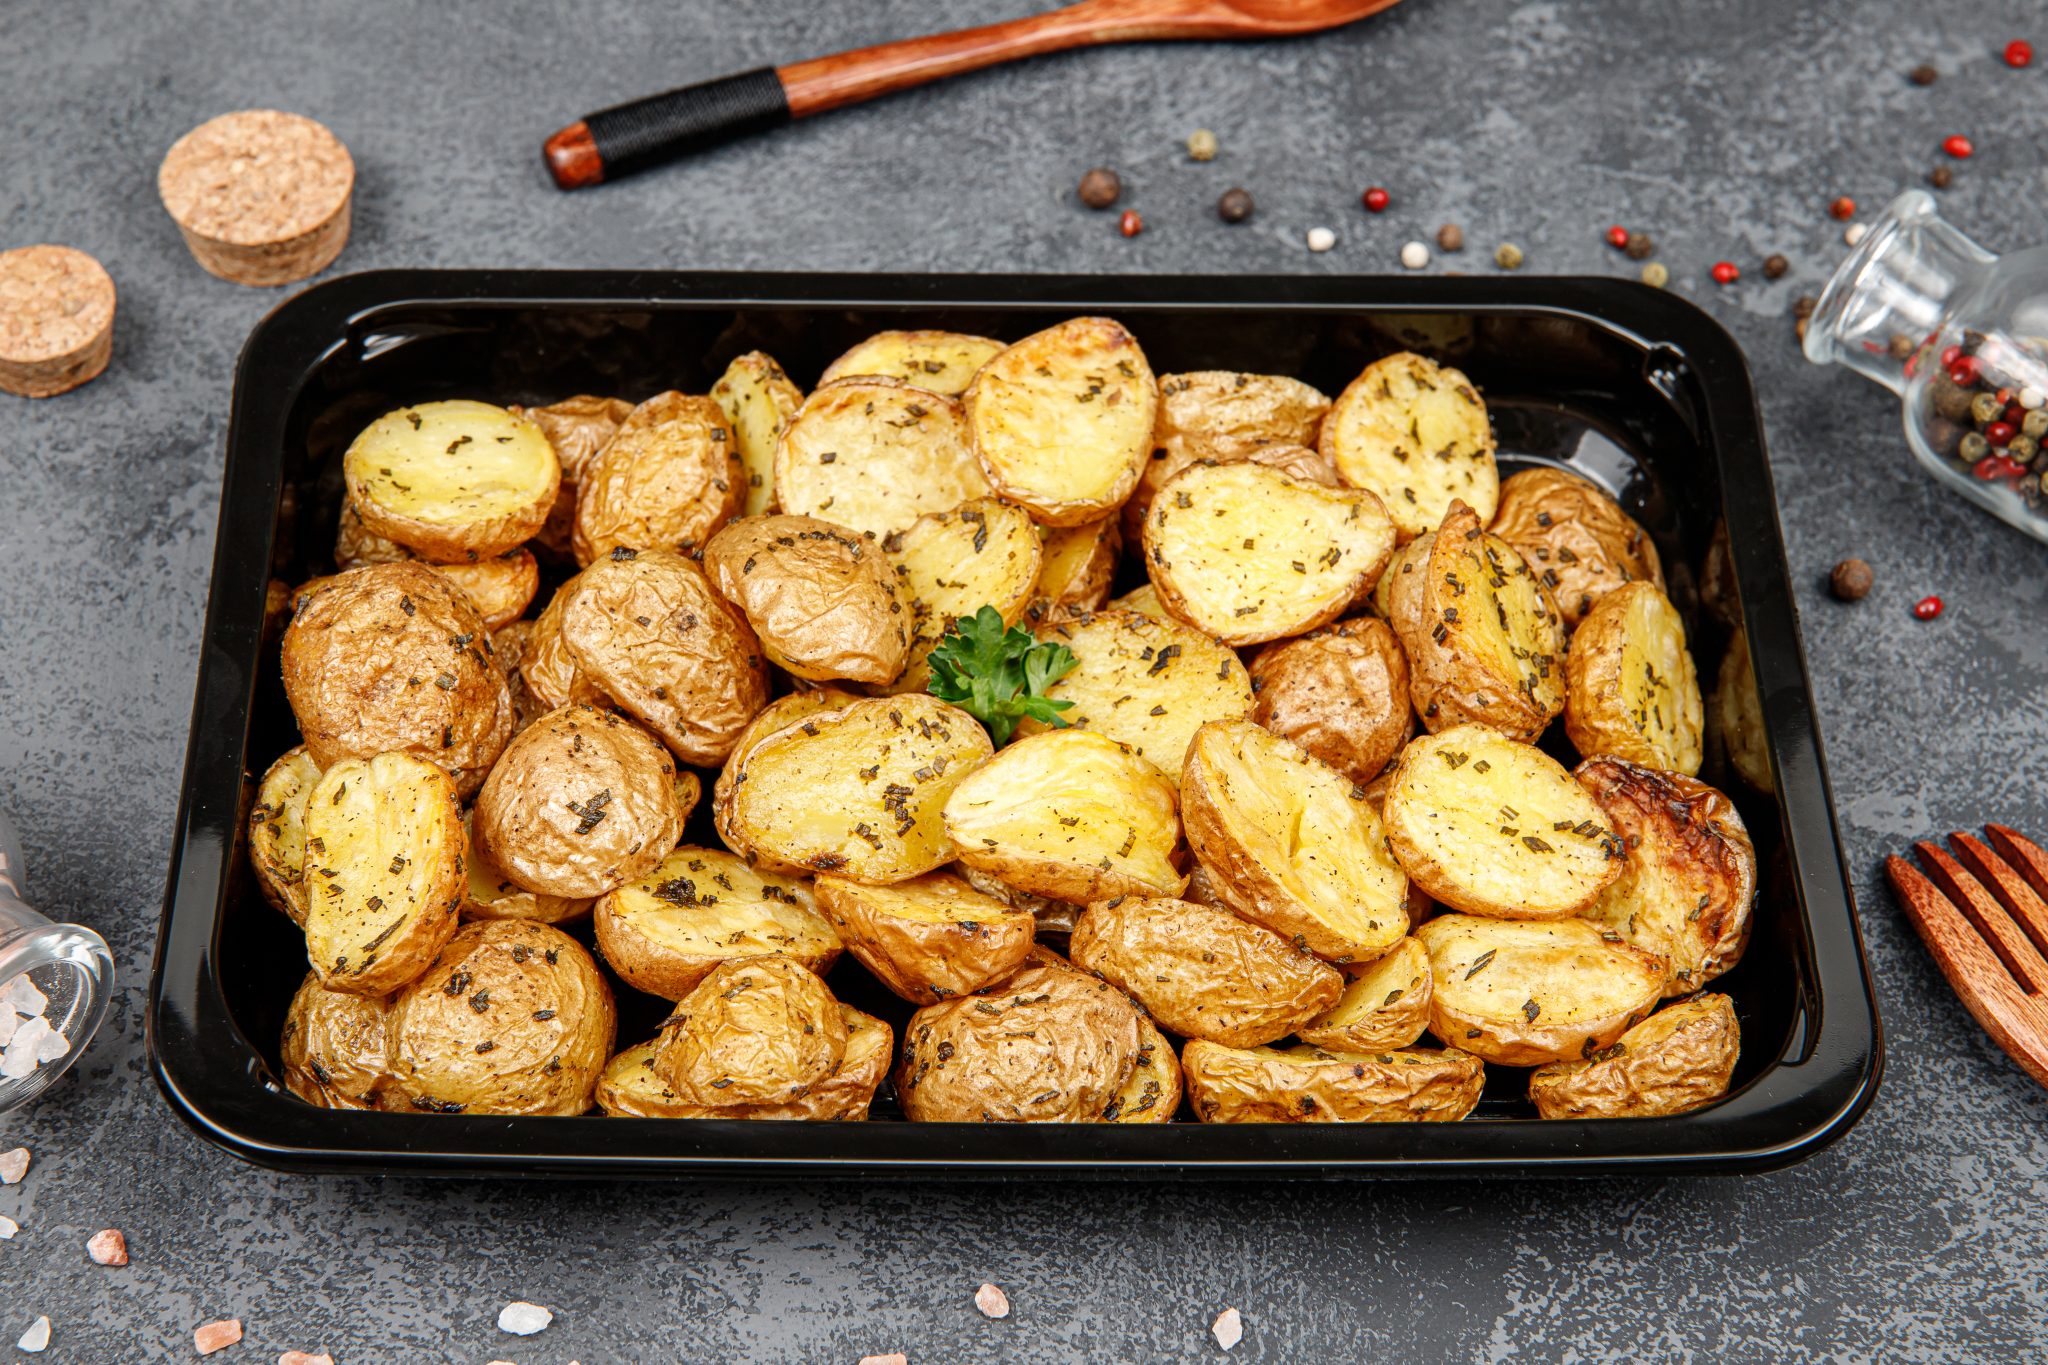 запеченная картошка в духовке рецепт с фото